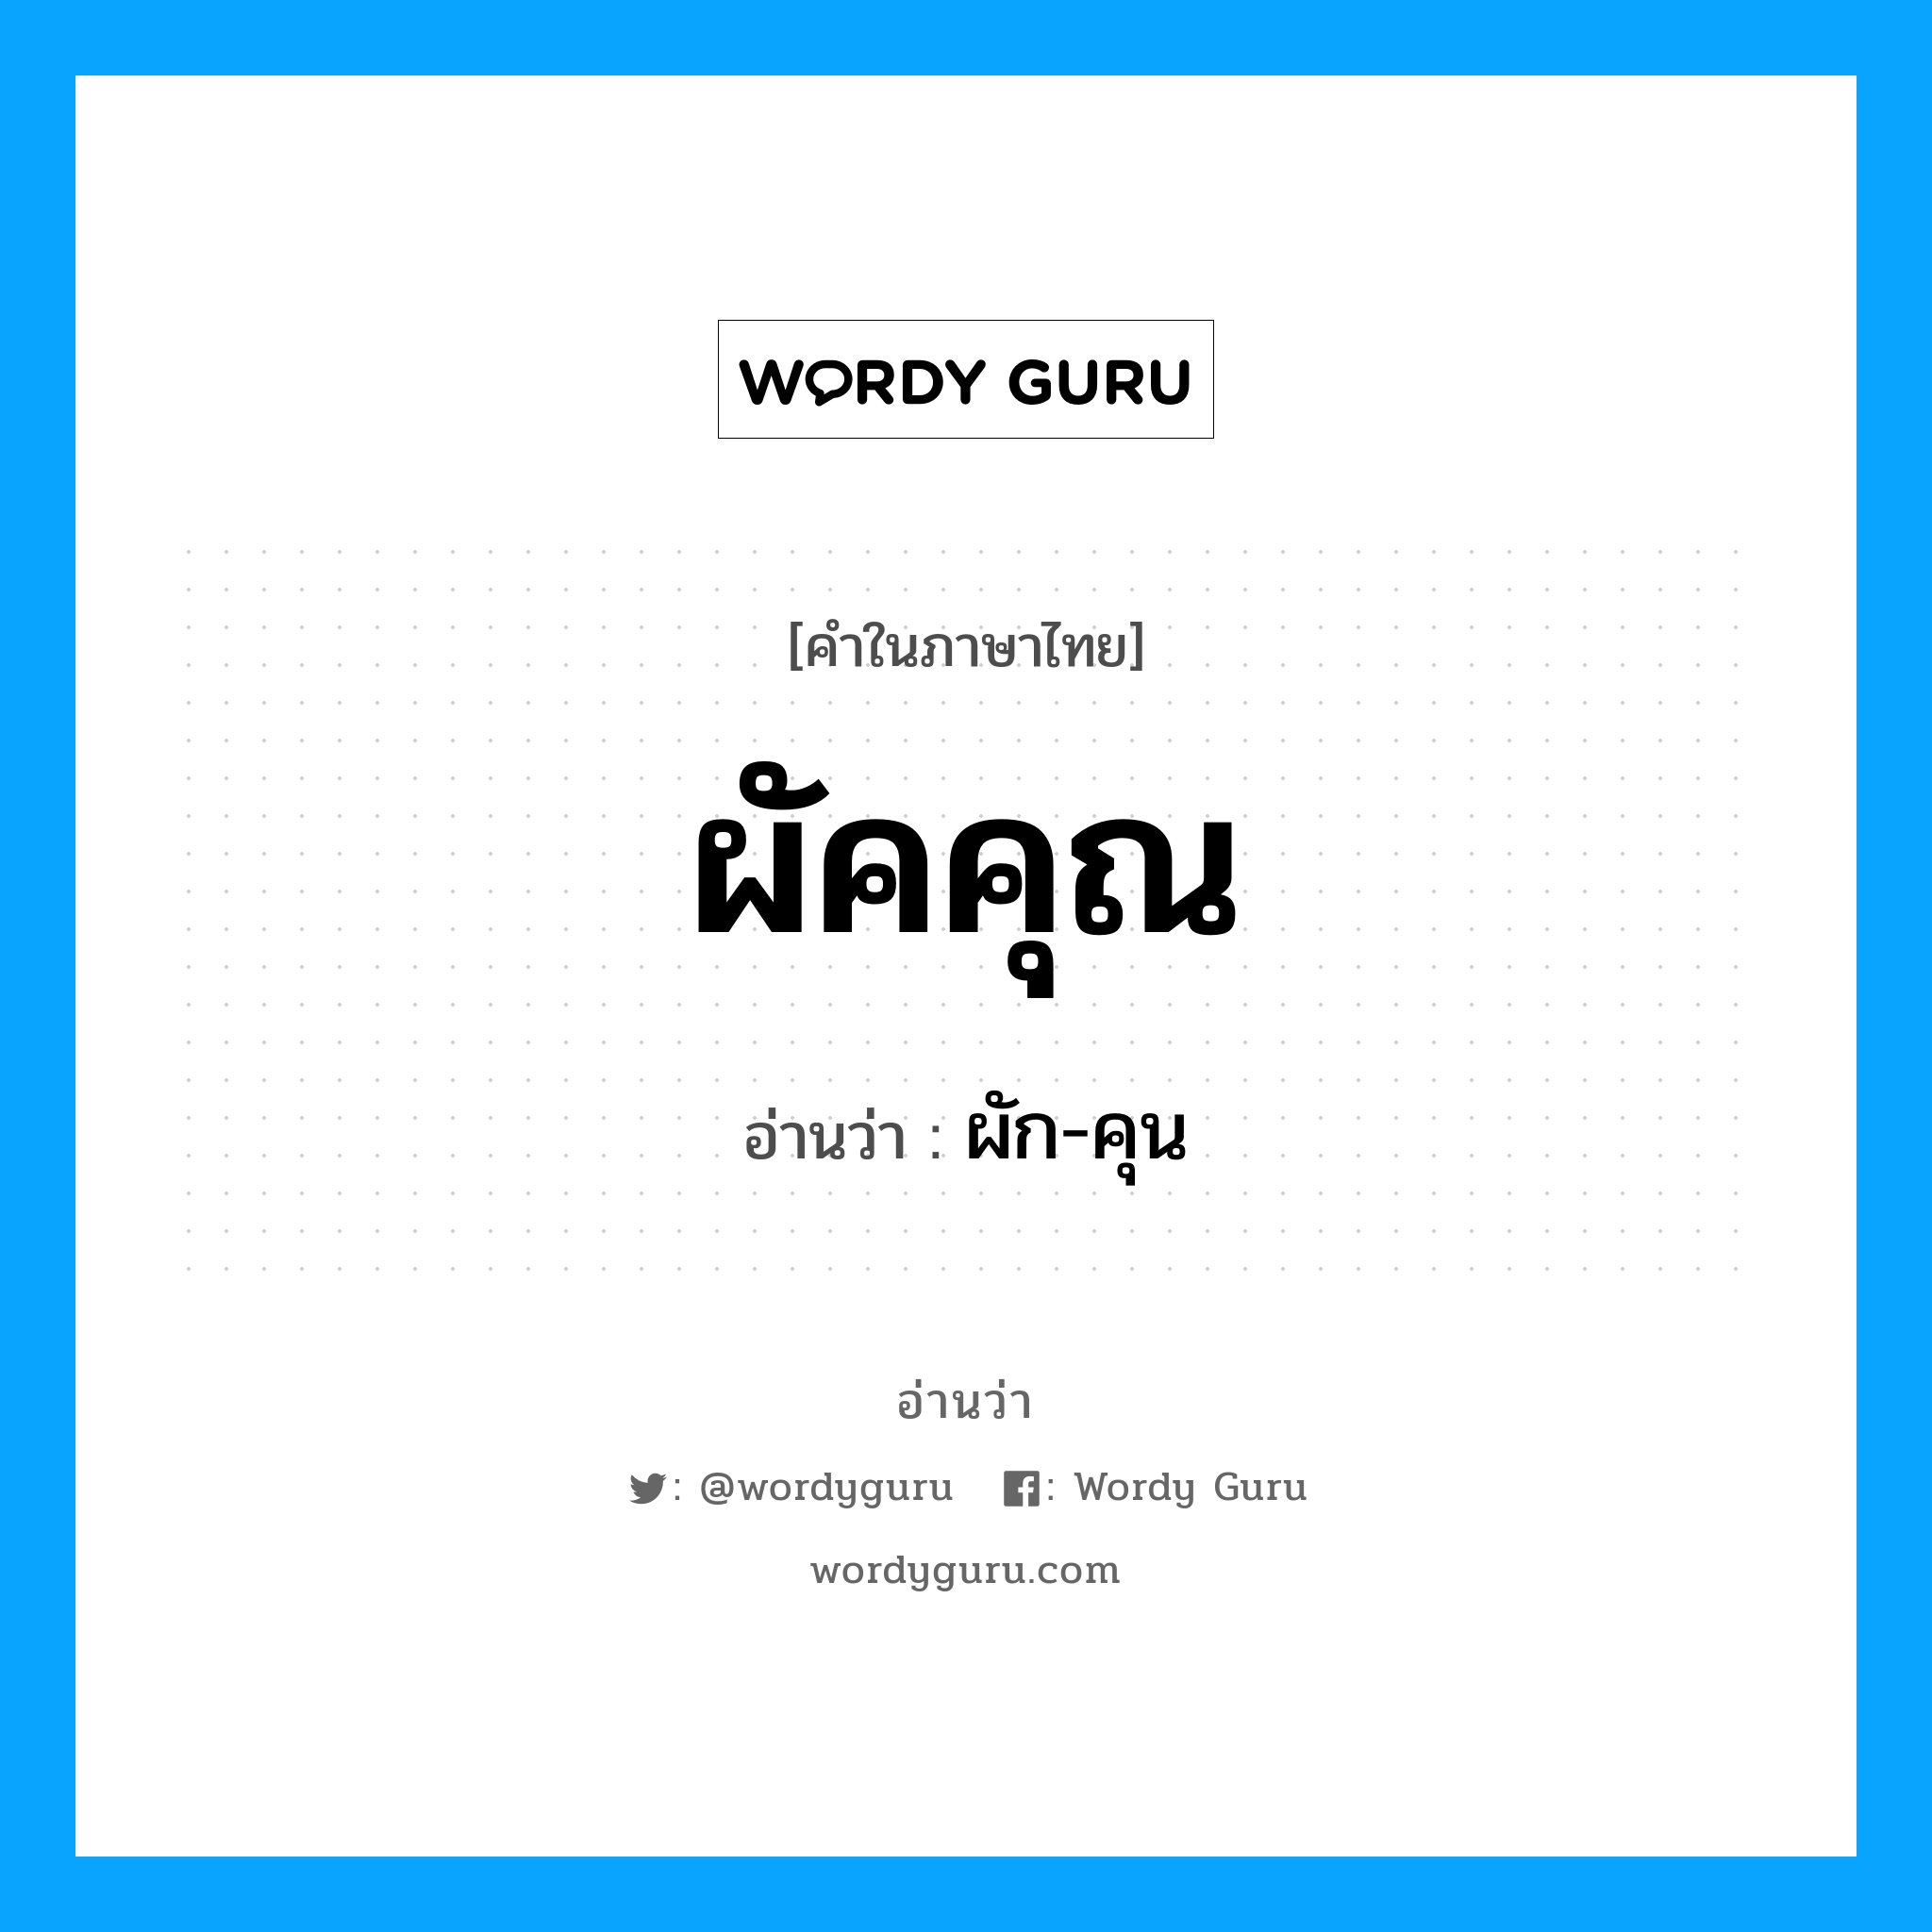 ผัก-คุน เป็นคำอ่านของคำไหน?, คำในภาษาไทย ผัก-คุน อ่านว่า ผัคคุณ